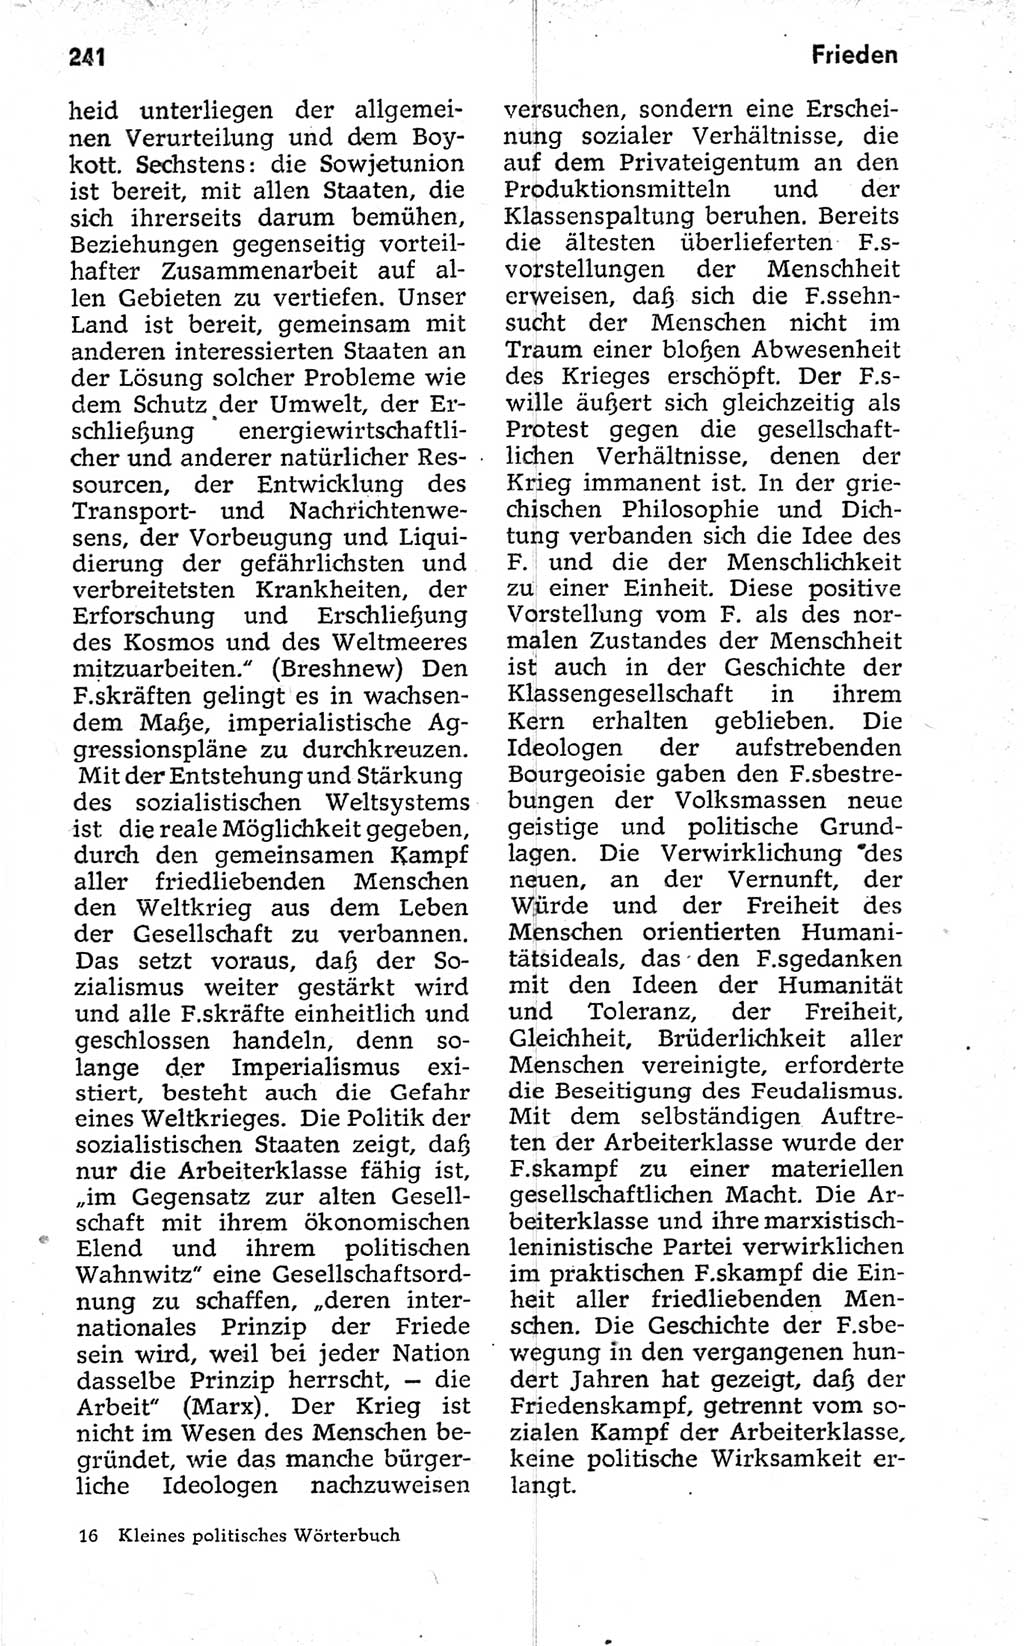 Kleines politisches Wörterbuch [Deutsche Demokratische Republik (DDR)] 1973, Seite 241 (Kl. pol. Wb. DDR 1973, S. 241)